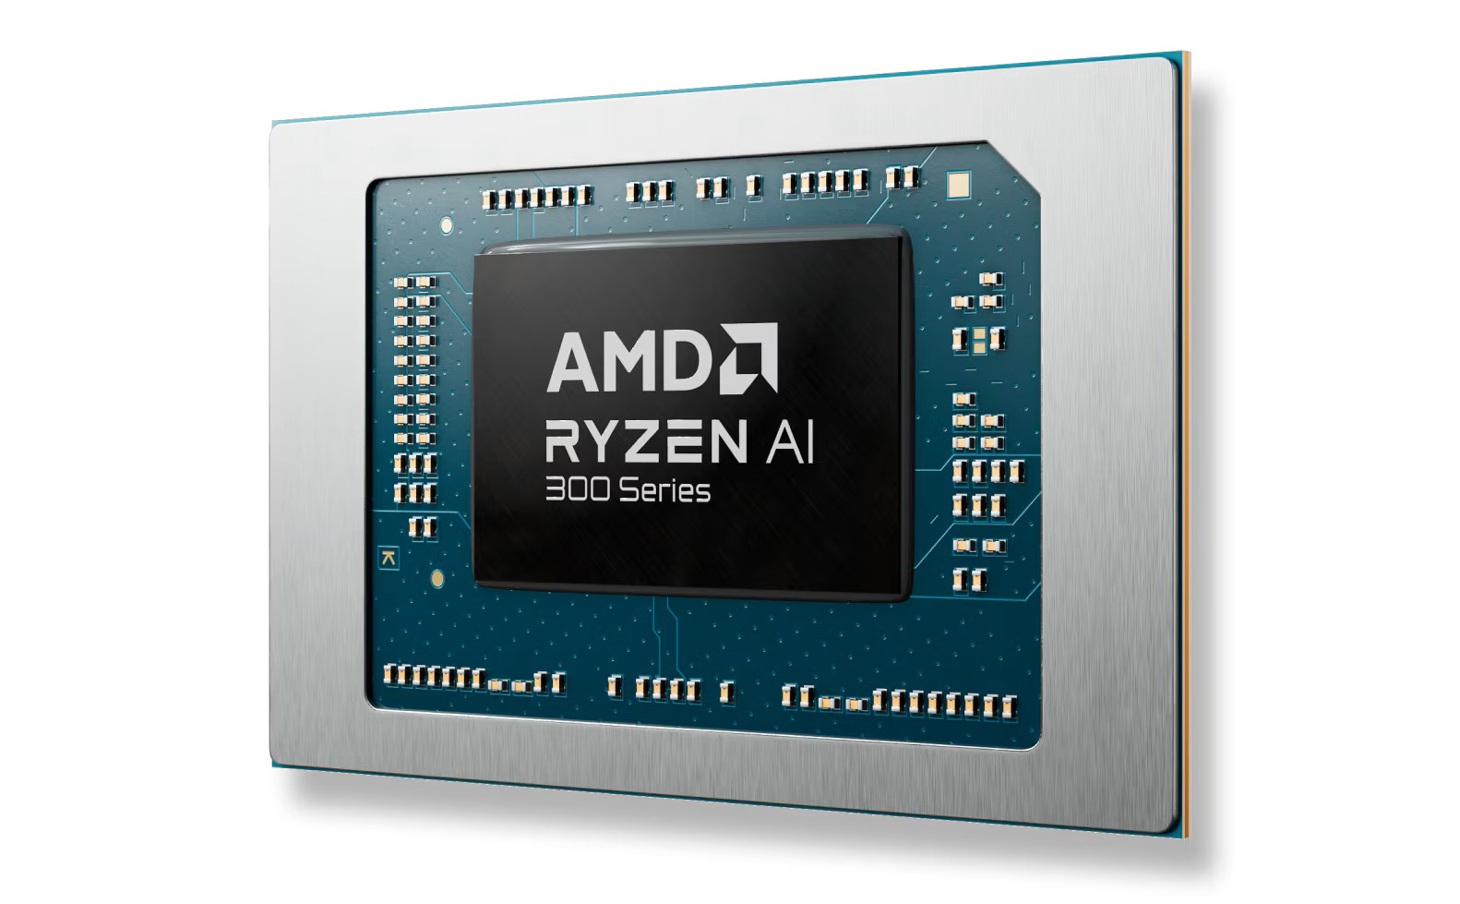 AMD xác nhận PC Ryzen AI 300 sẽ không có sẵn bộ tính năng Copilot+ khi bán ra